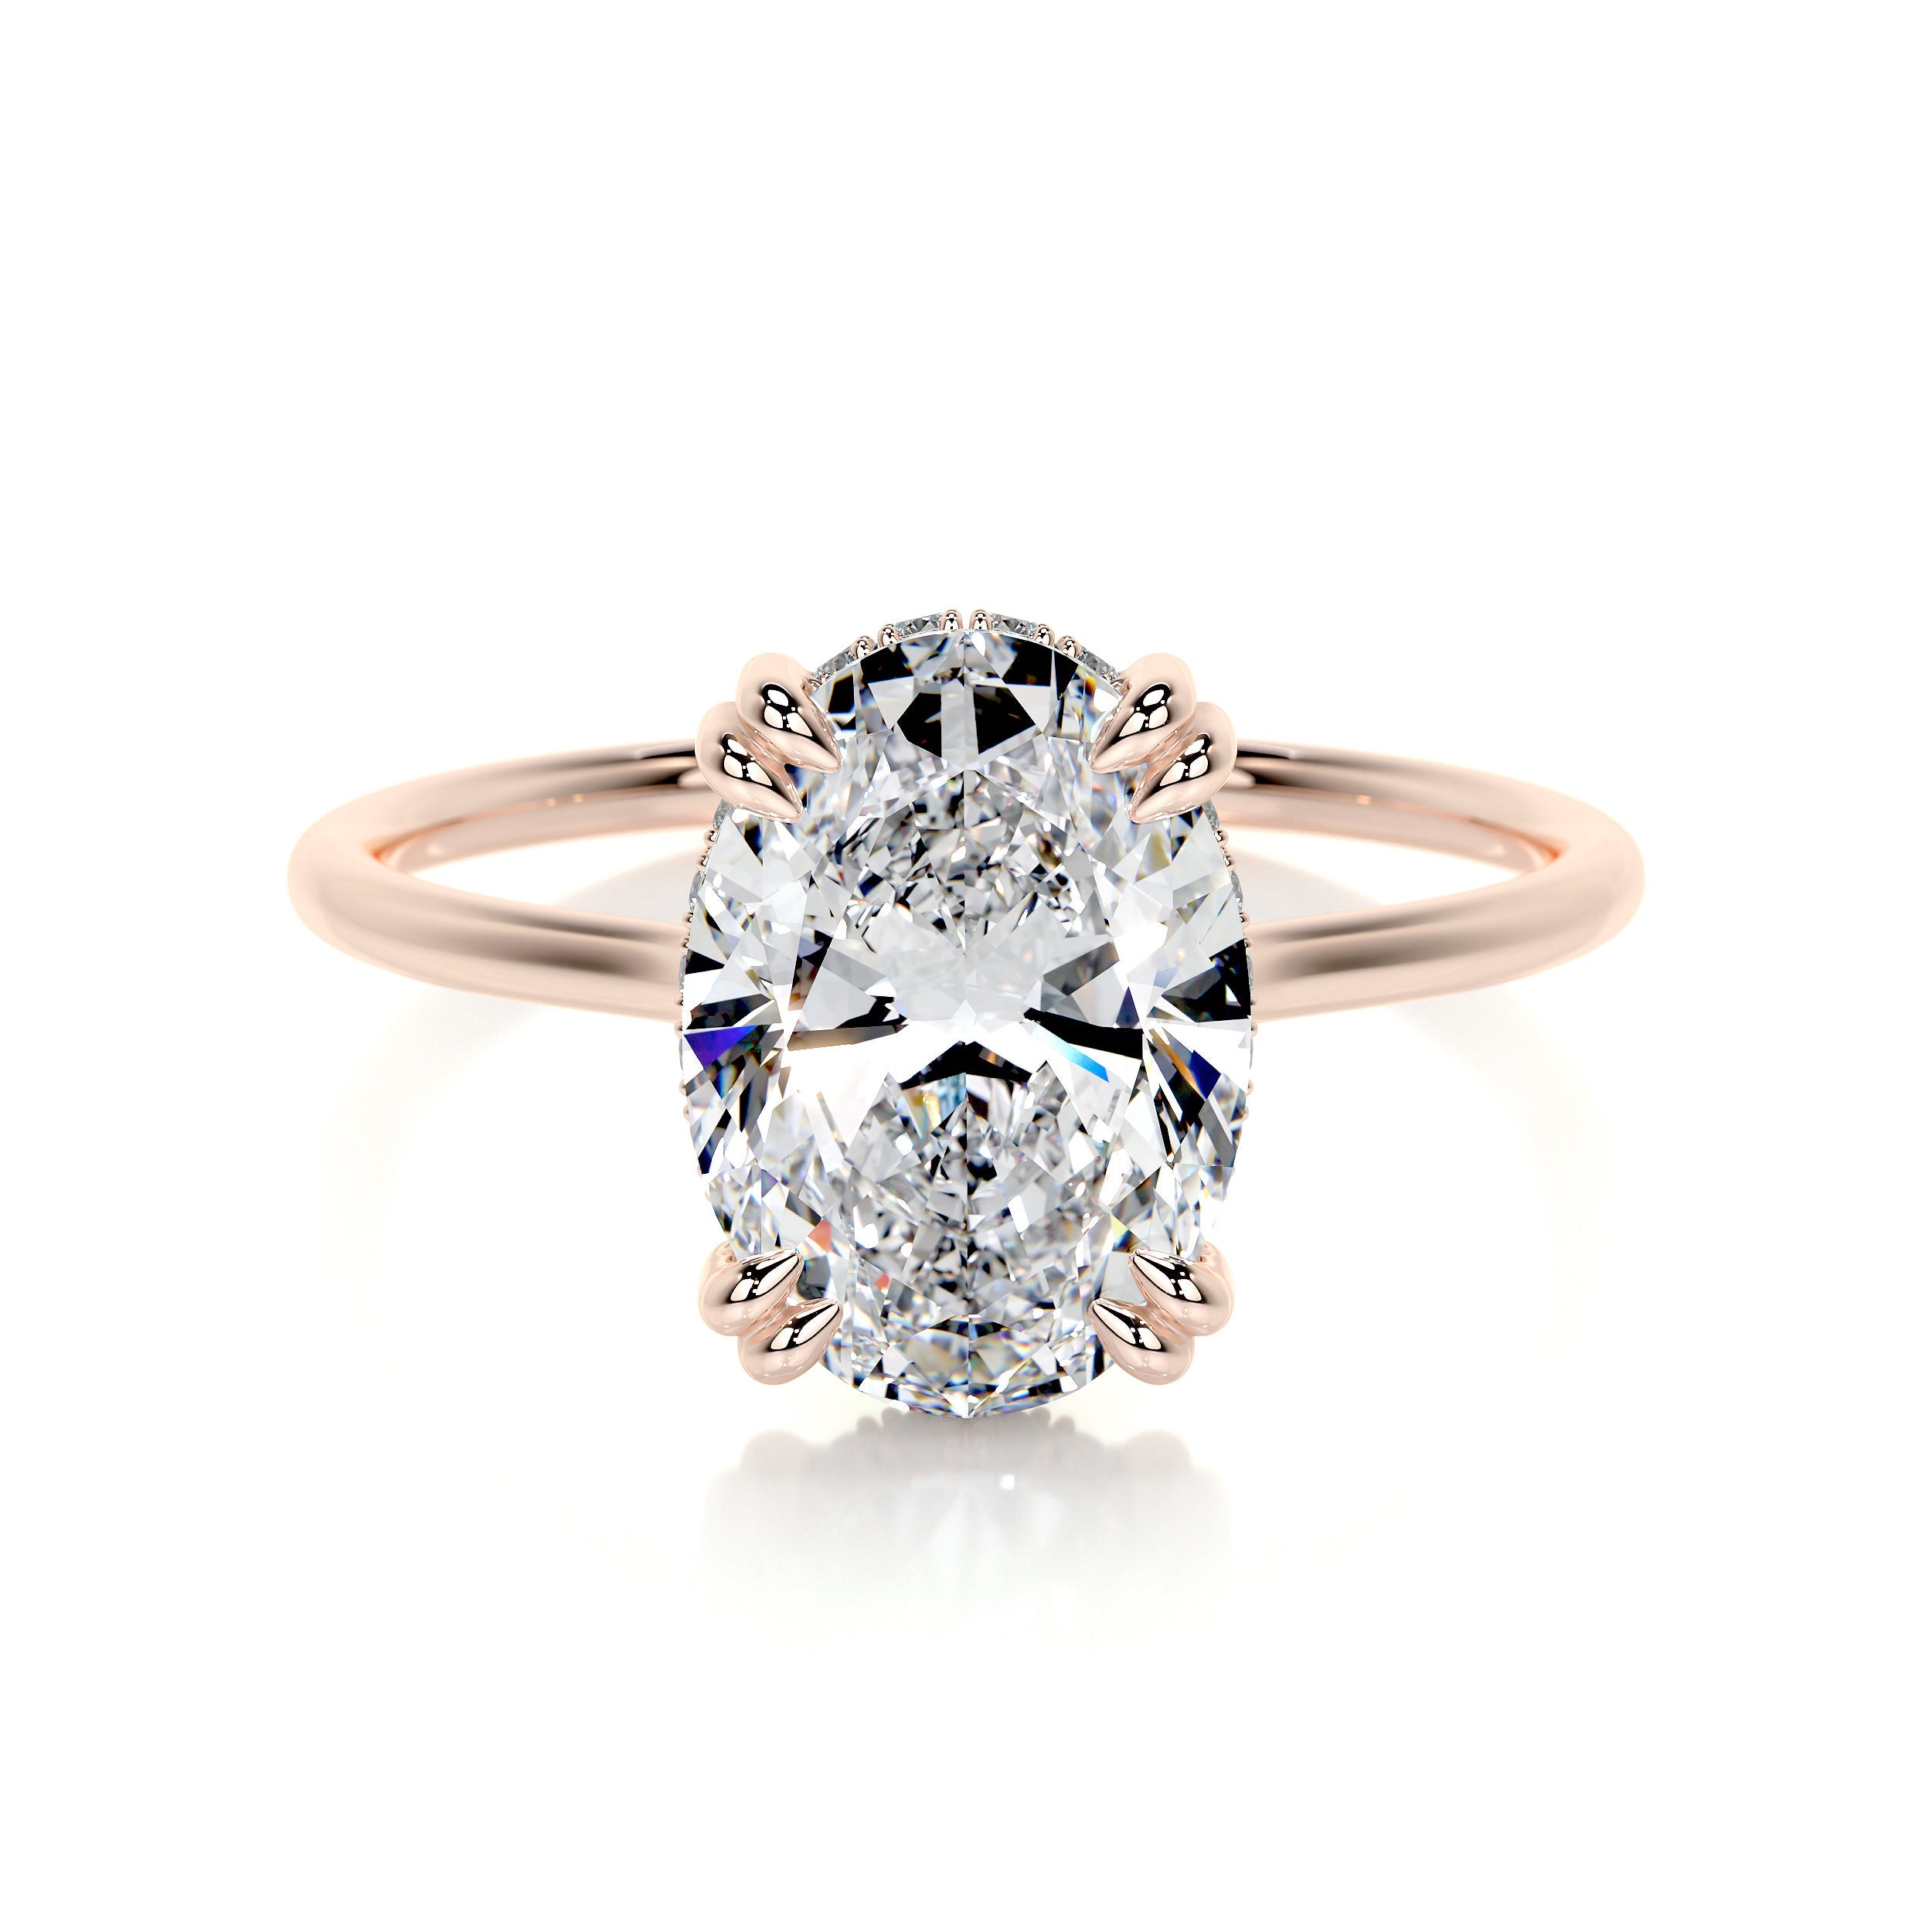 Harriet Lab Grown Diamond Ring   (3.1 Carat) -14K Rose Gold